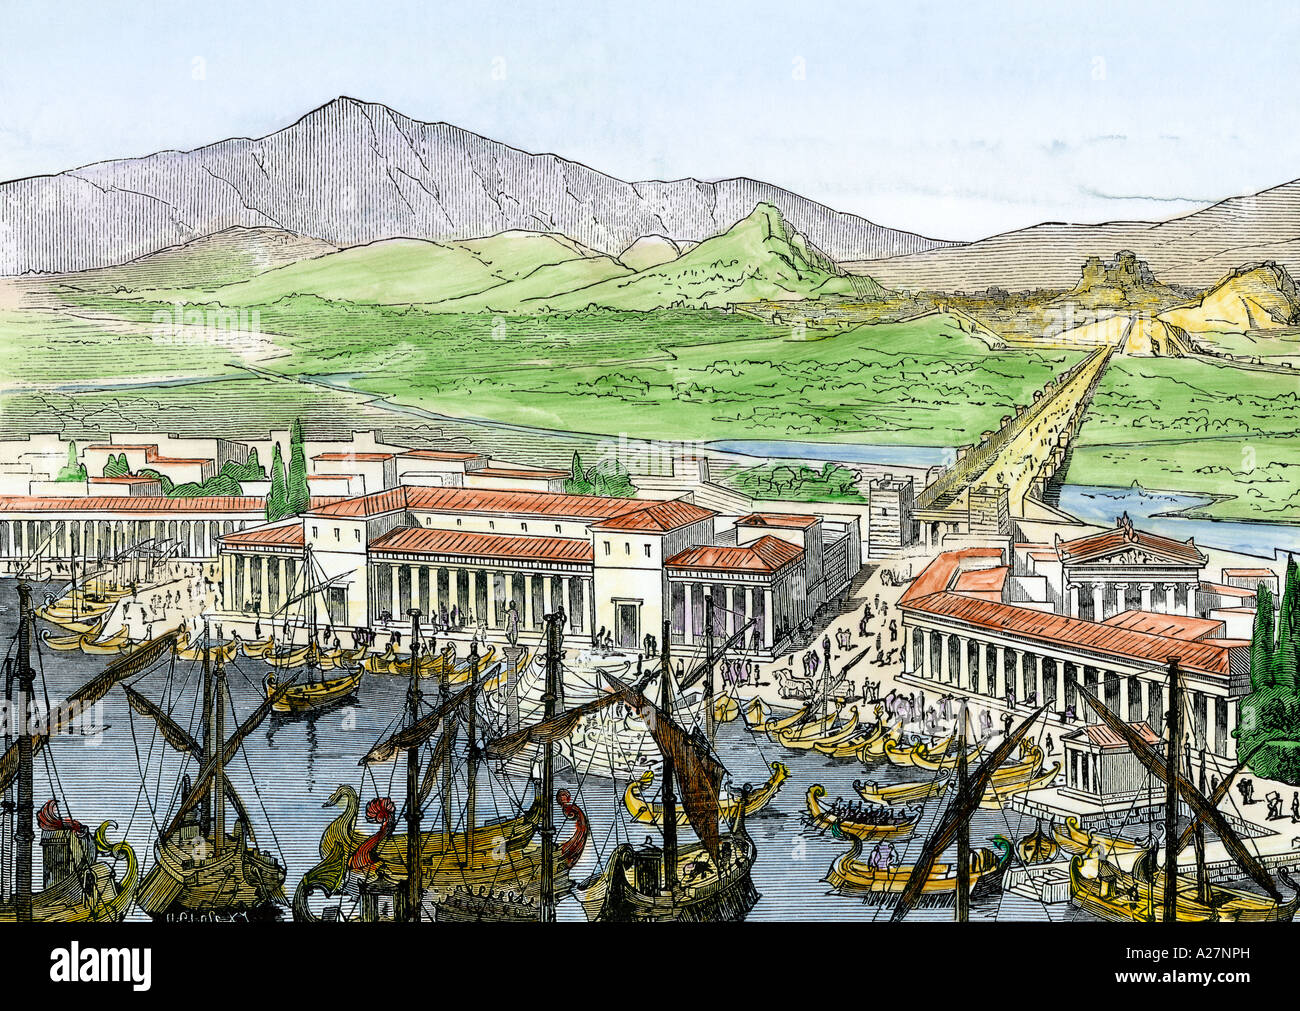 Puerto del pireo antigua grecia fotografías e imágenes de alta resolución -  Alamy